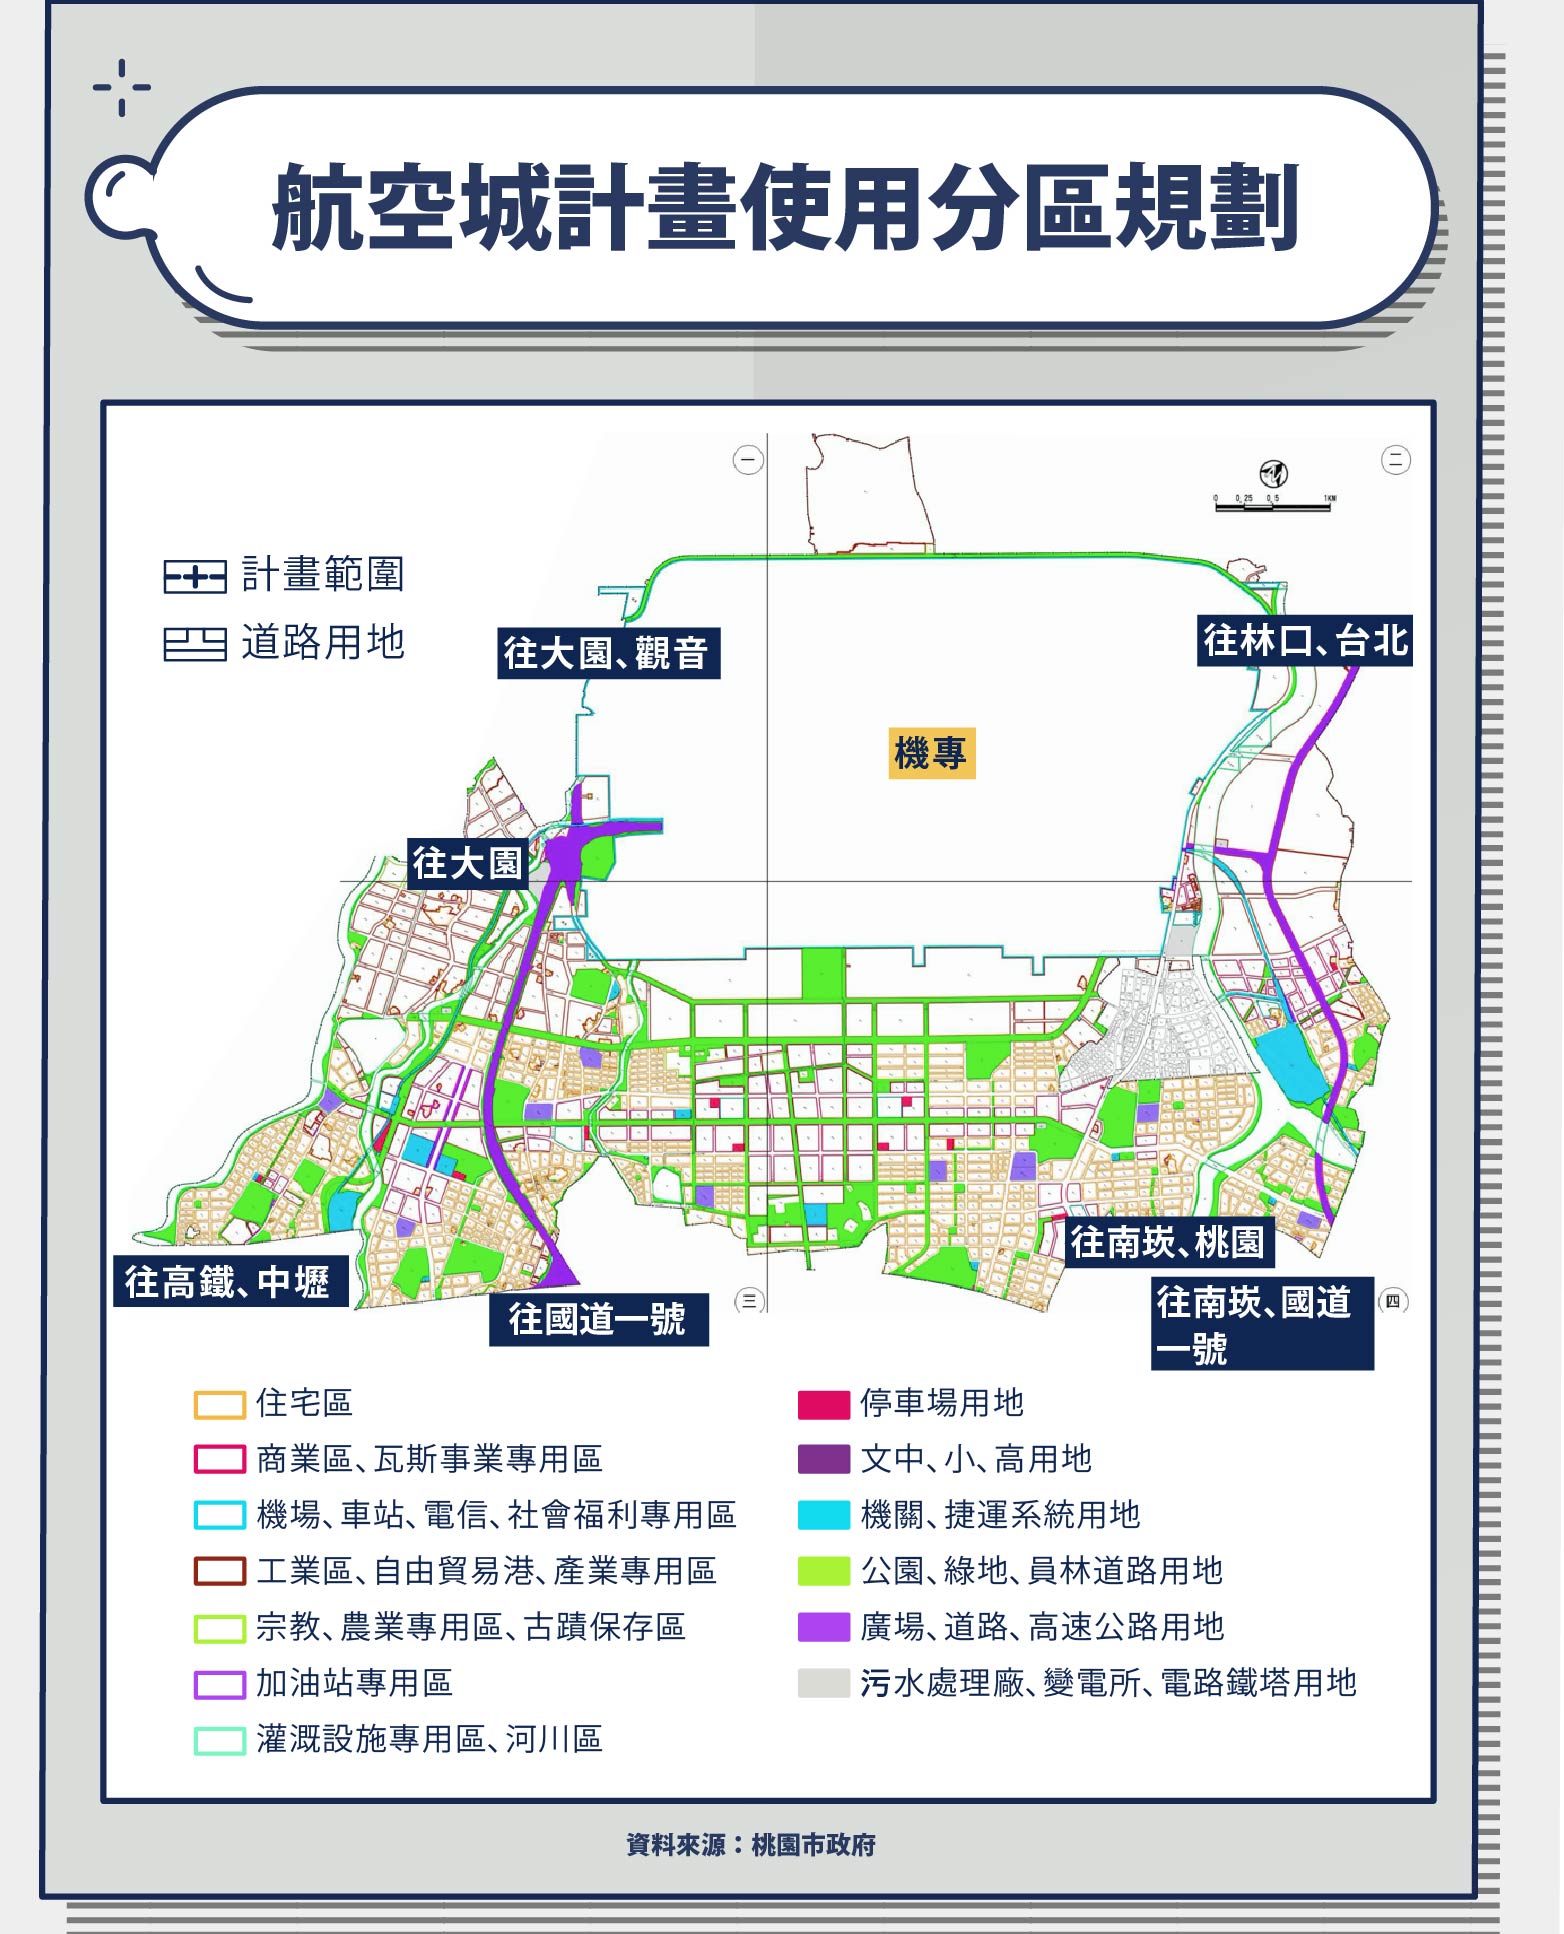 航空城計畫使用分區規劃